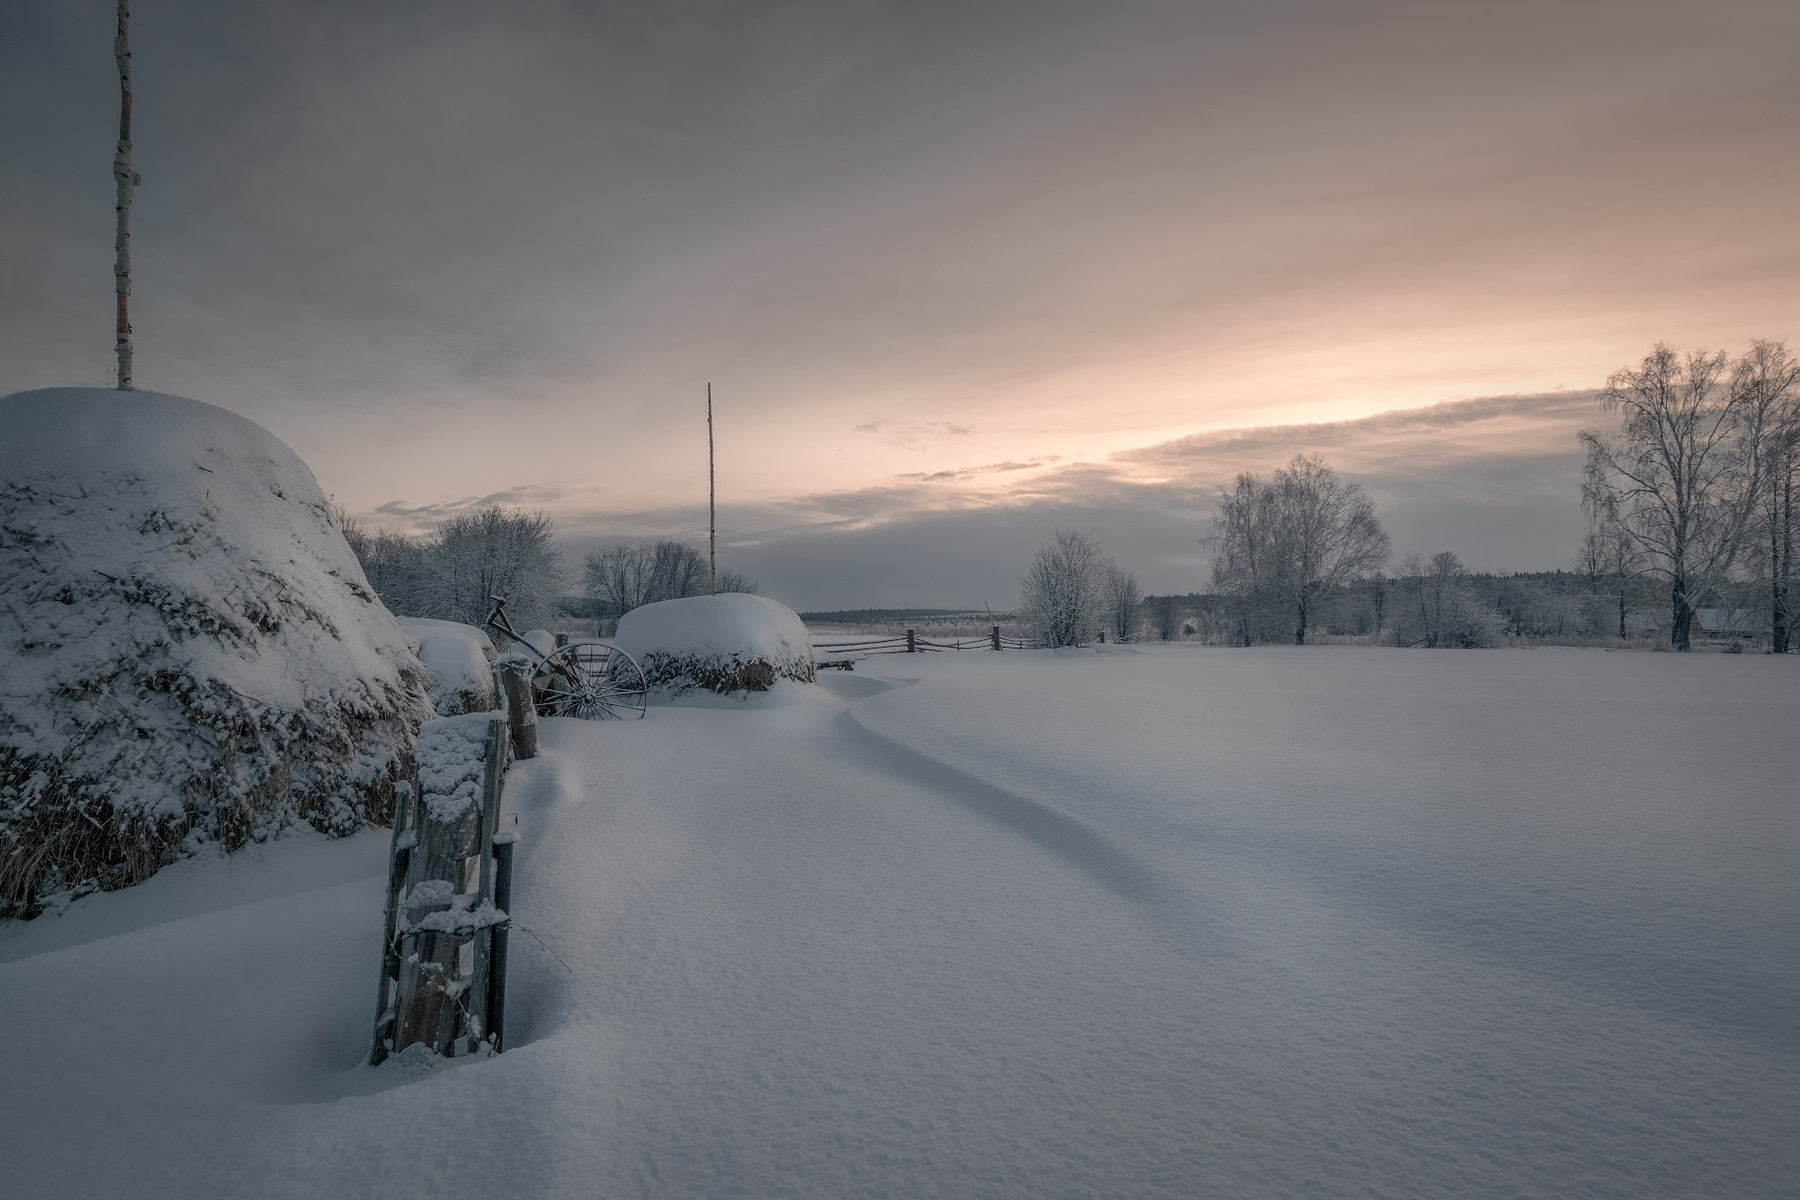 Сено под снегом зима сылва деревня сено стог утро холод мороз снег пейзаж забор урал пермь